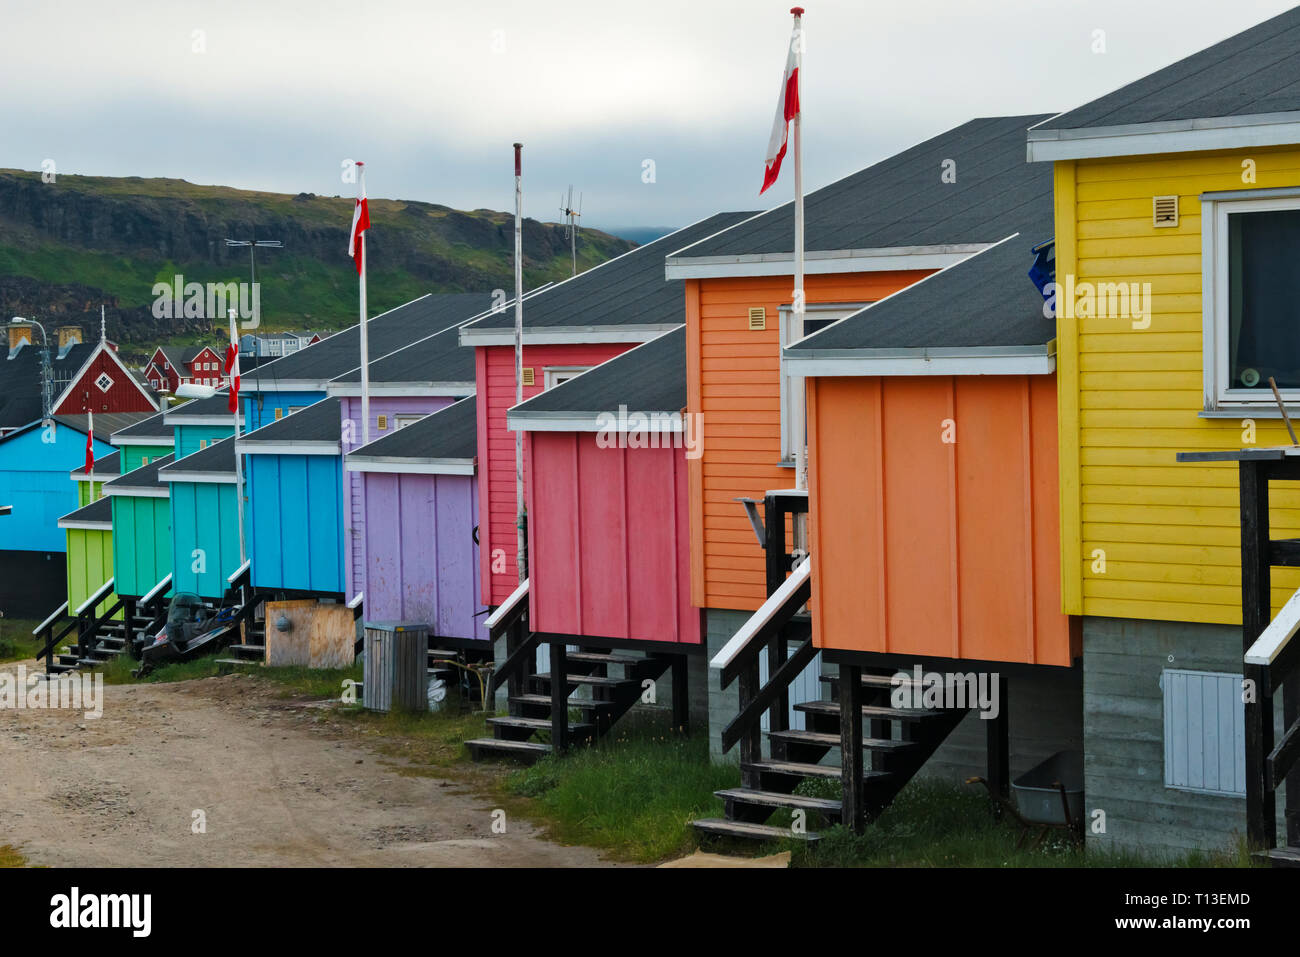 Maisons peintes de couleurs vives, Qeqertarsuaq, Groenland Banque D'Images